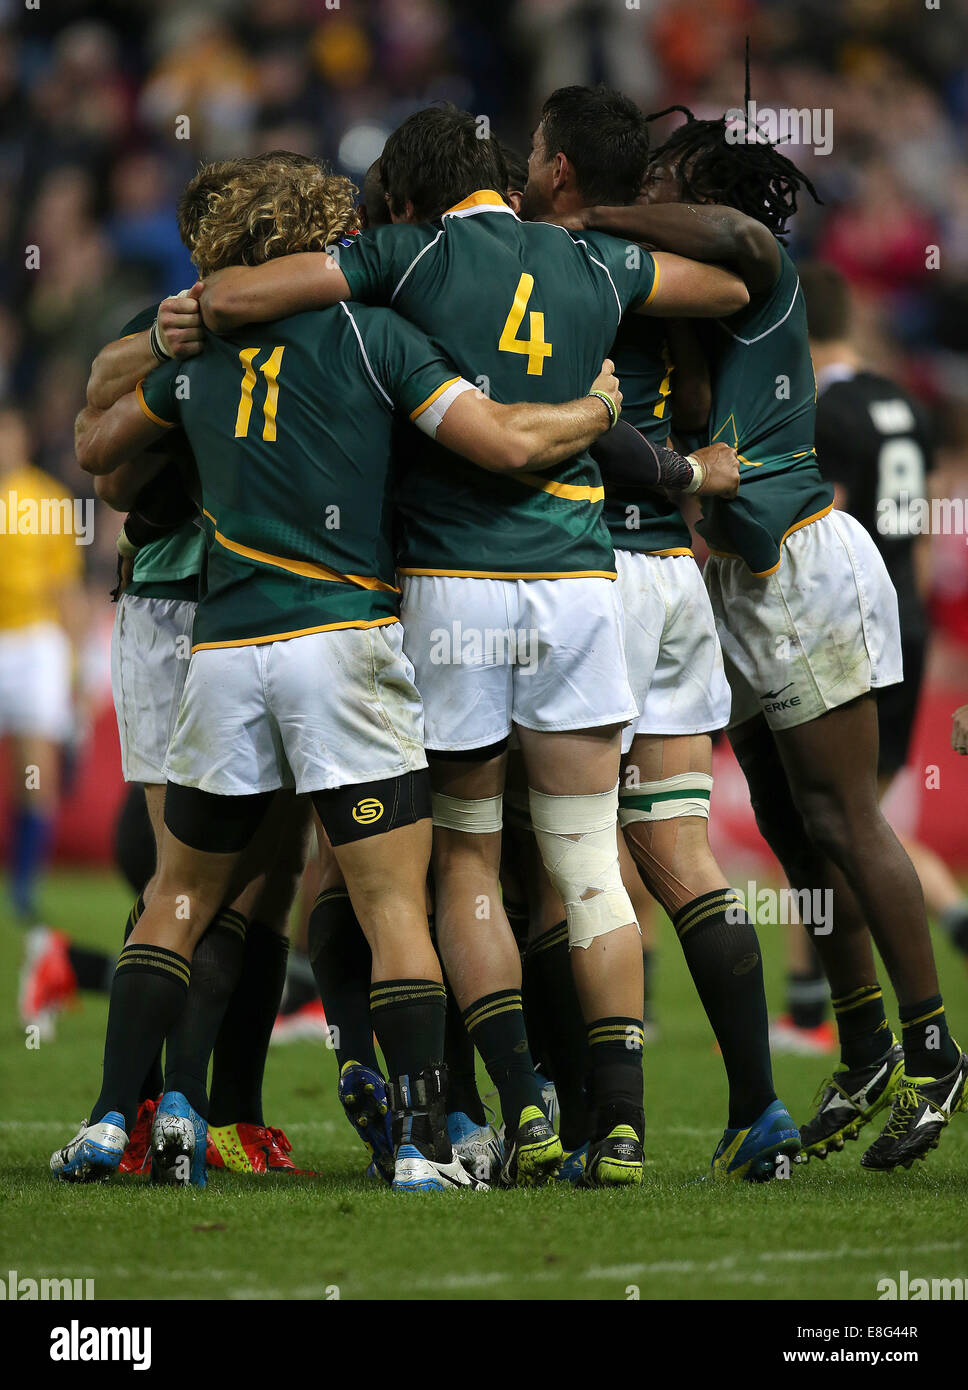 Südafrika feiert Sieg und die Goldmedaille. Südafrika V Neuseeland - Rugby Sevens FinalIbrox Stadium - Glasgow - Sco Stockfoto